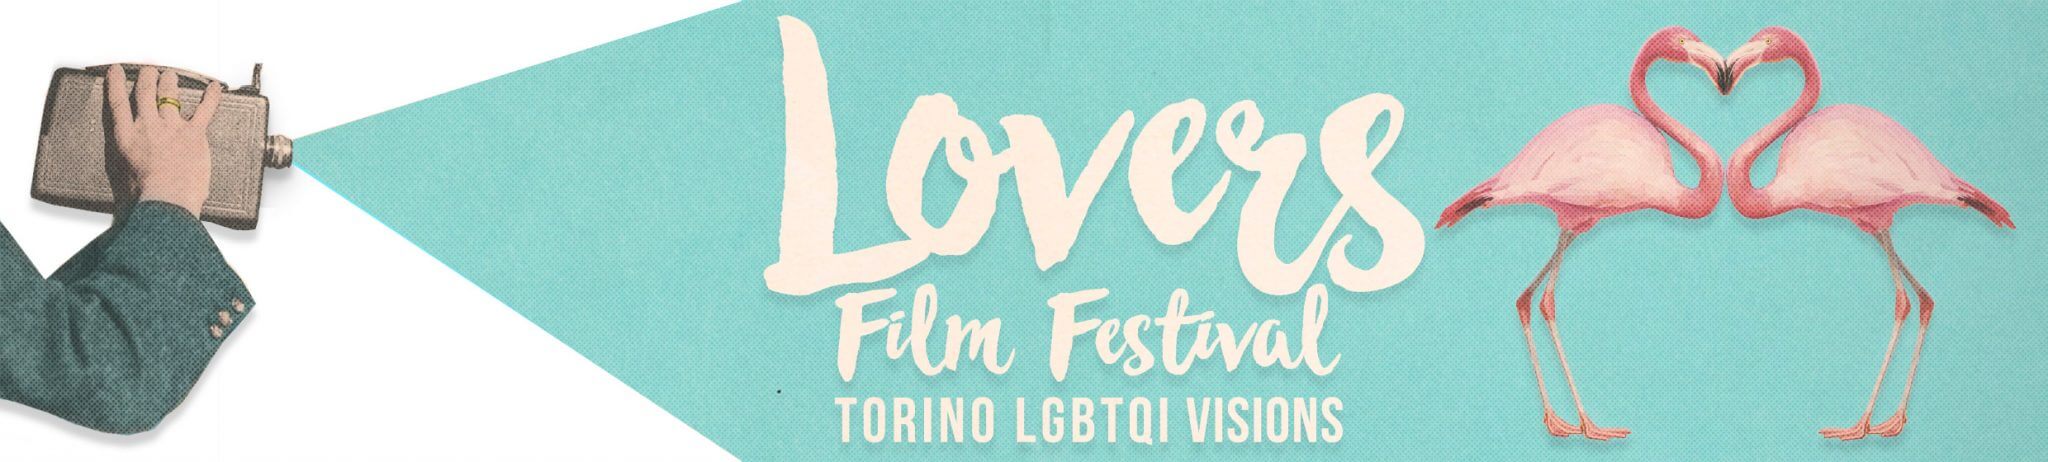 Francesco Gabbani inaugura il Lovers Film Festival 2018 di Torino - image0031 - Gay.it